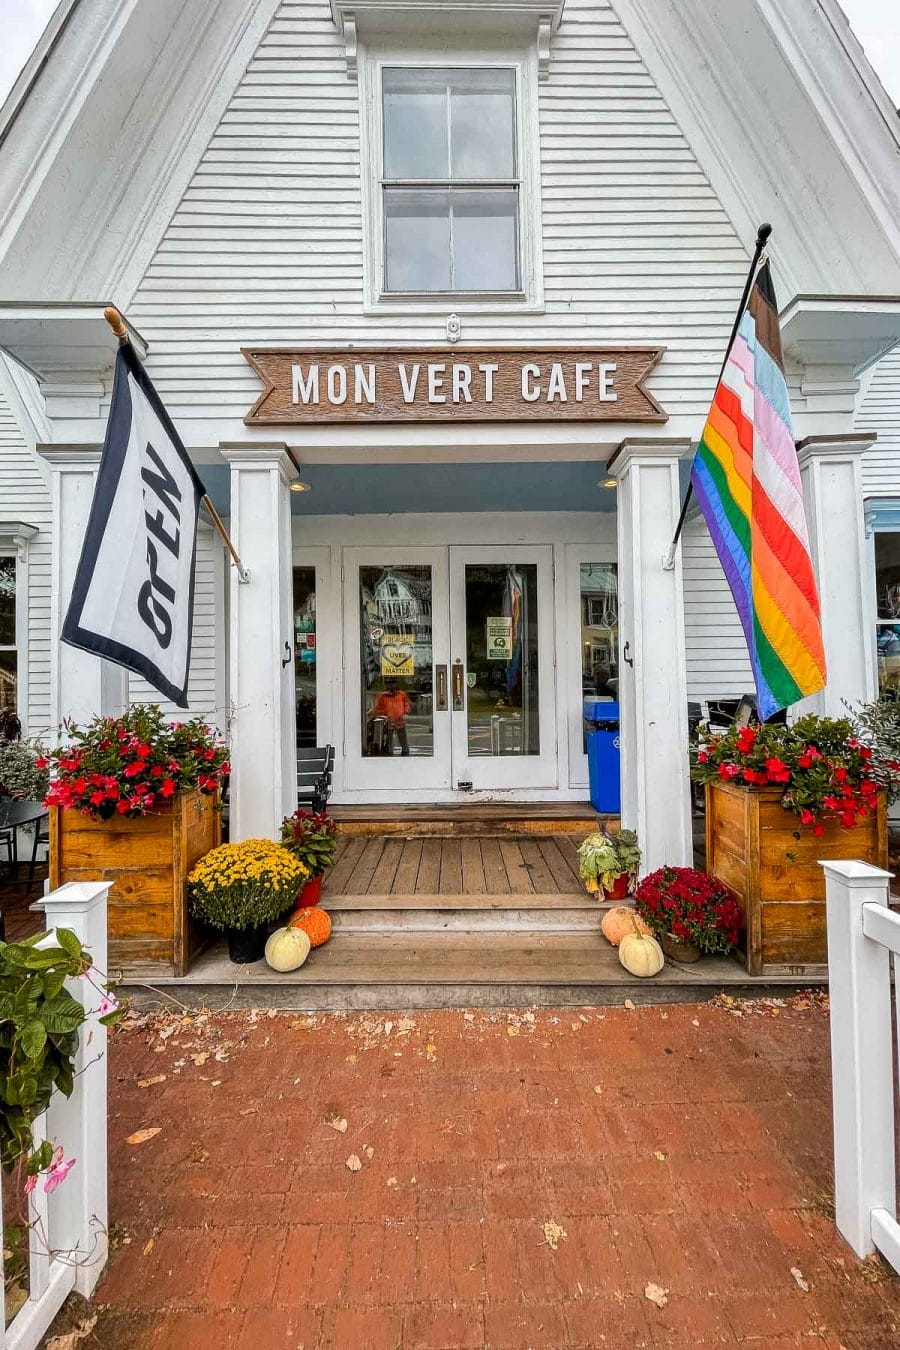 Mon Vert Cafe in Woodstock, Vermont